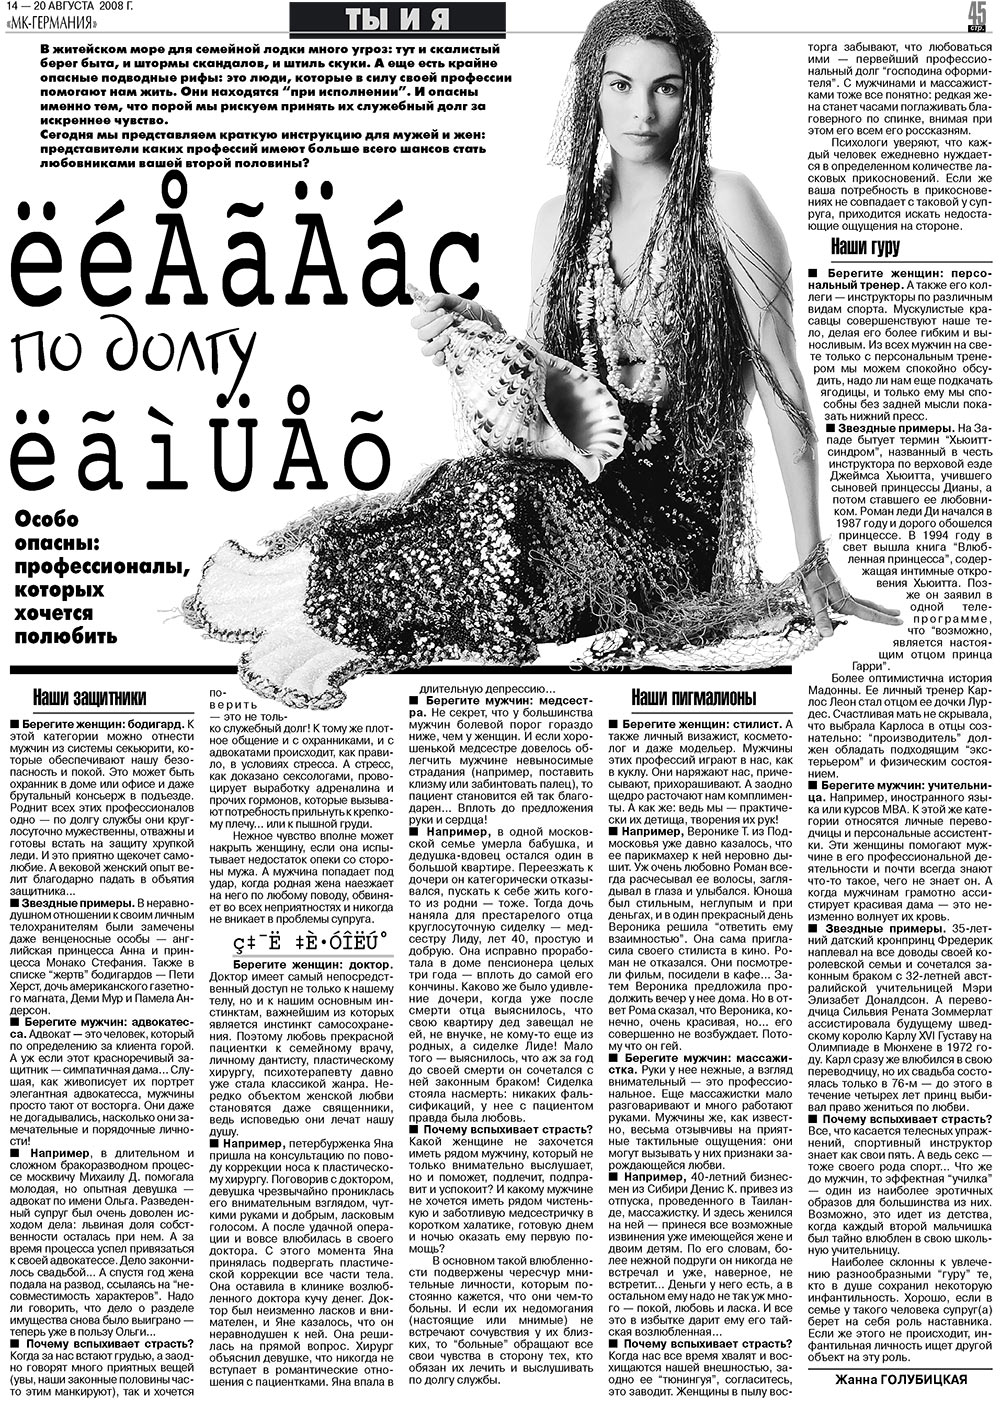 МК-Германия (газета). 2008 год, номер 33, стр. 45